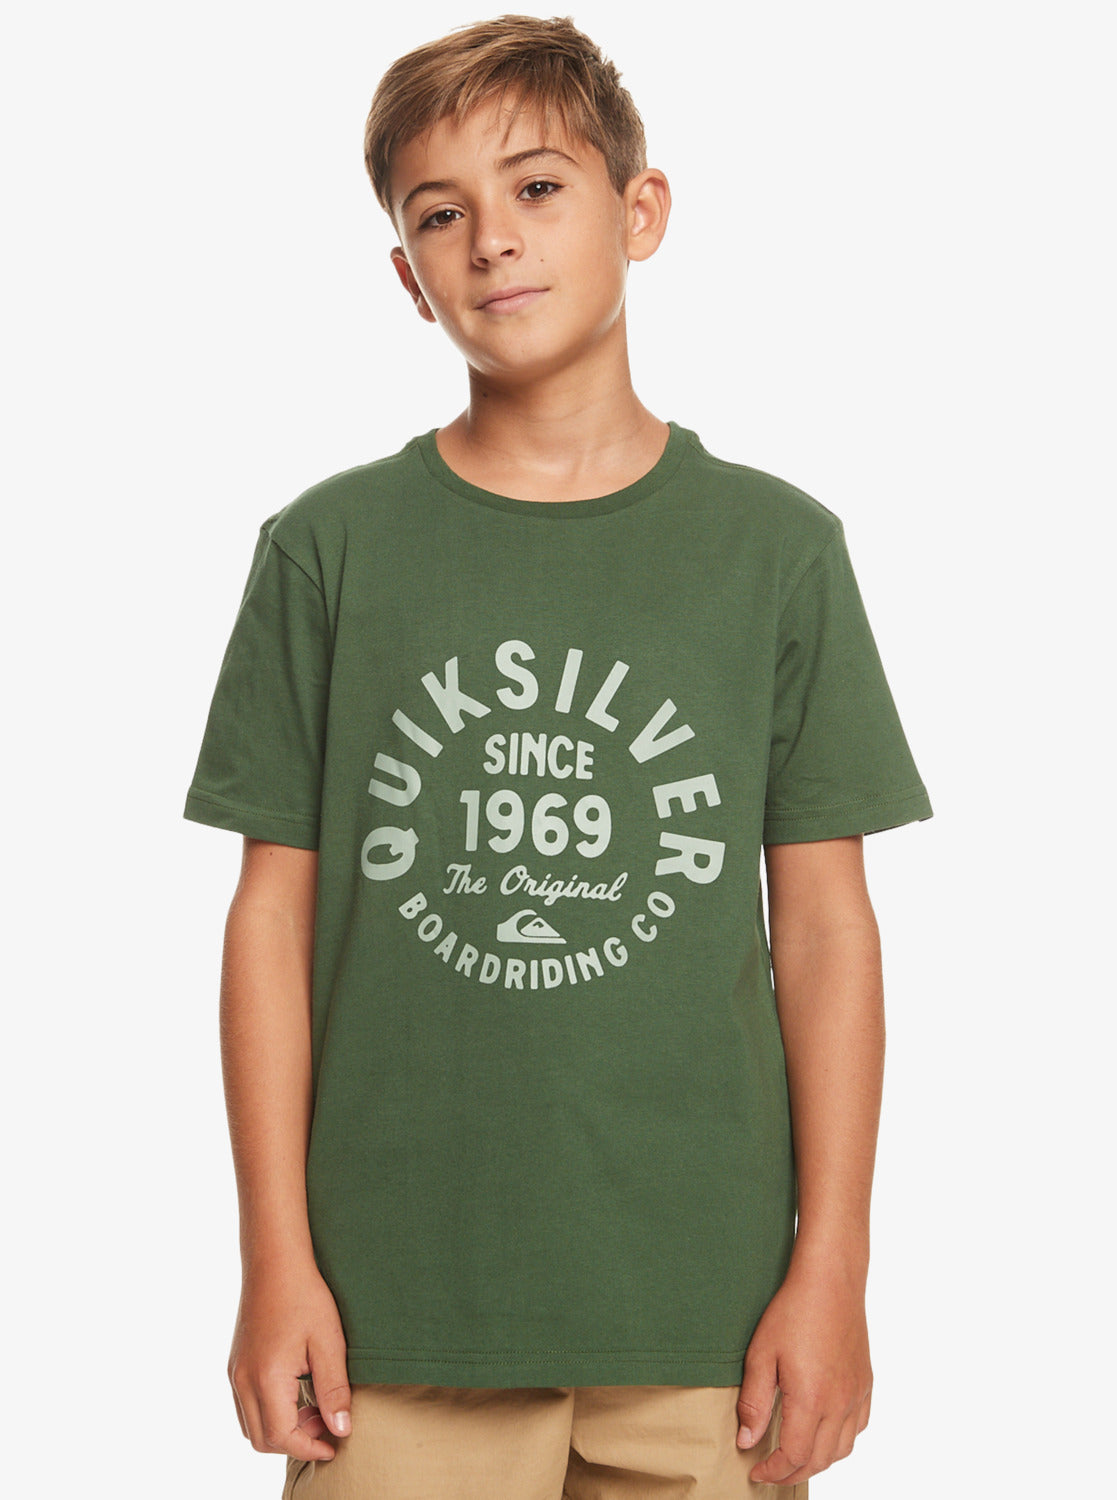 – in Boys Pastures Quiksilver Greener Surfari-South T-Shirt Script Circled